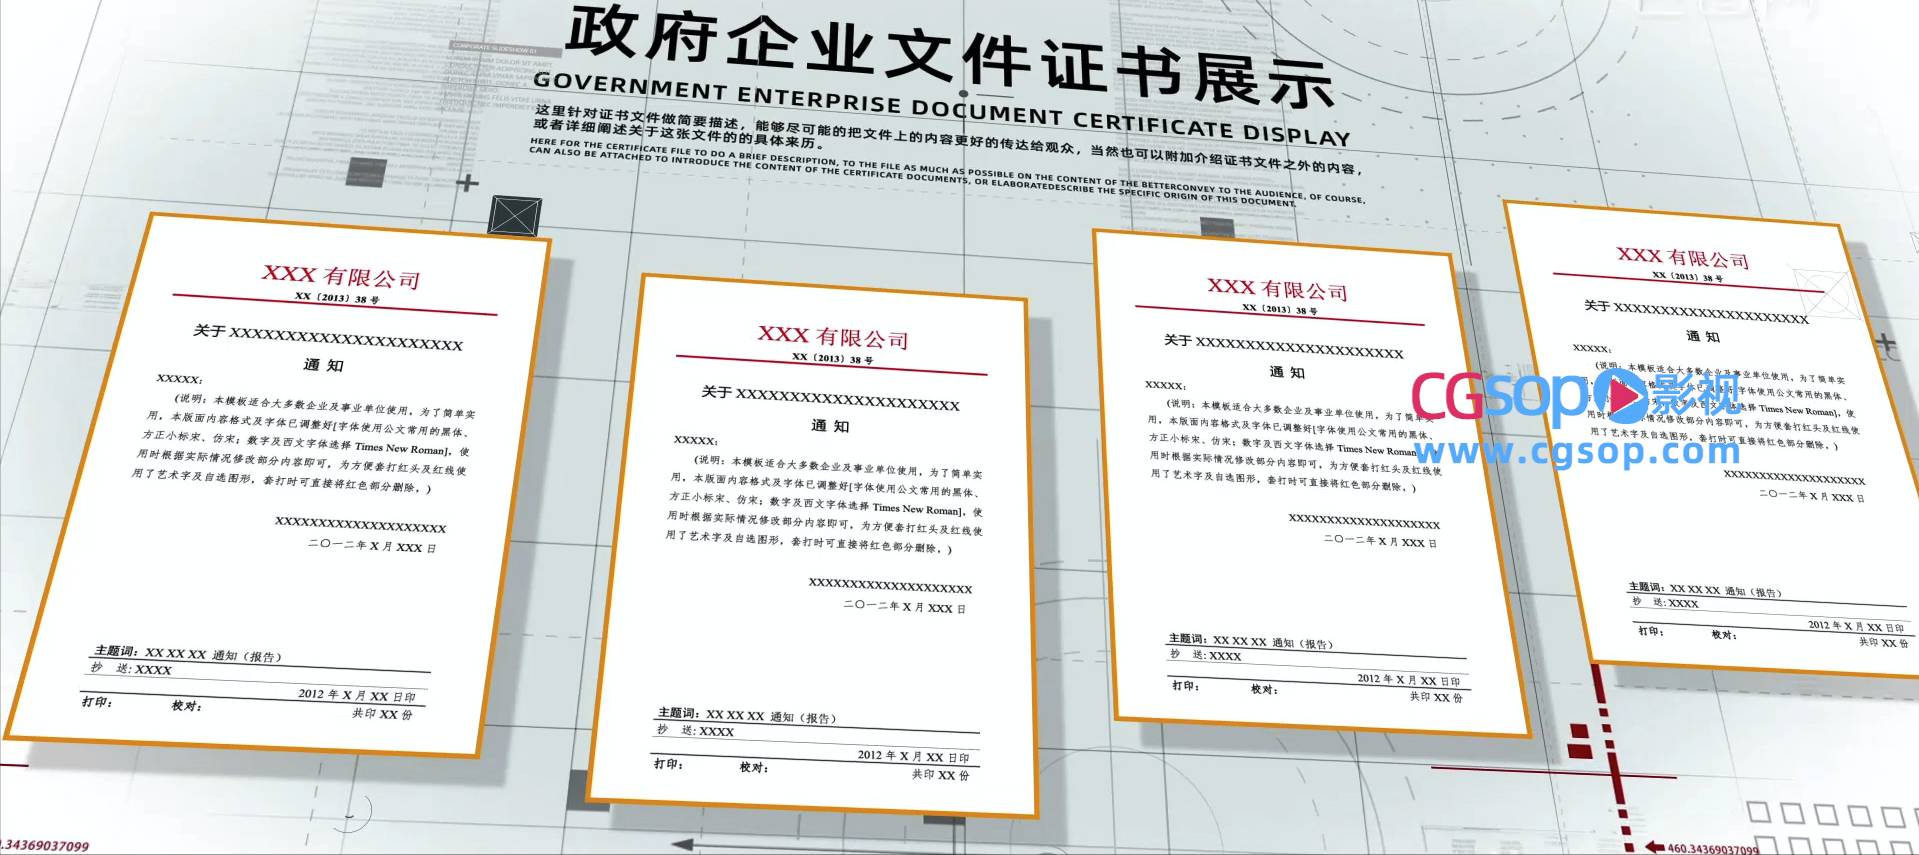 政府企业证书文件展示AE模板